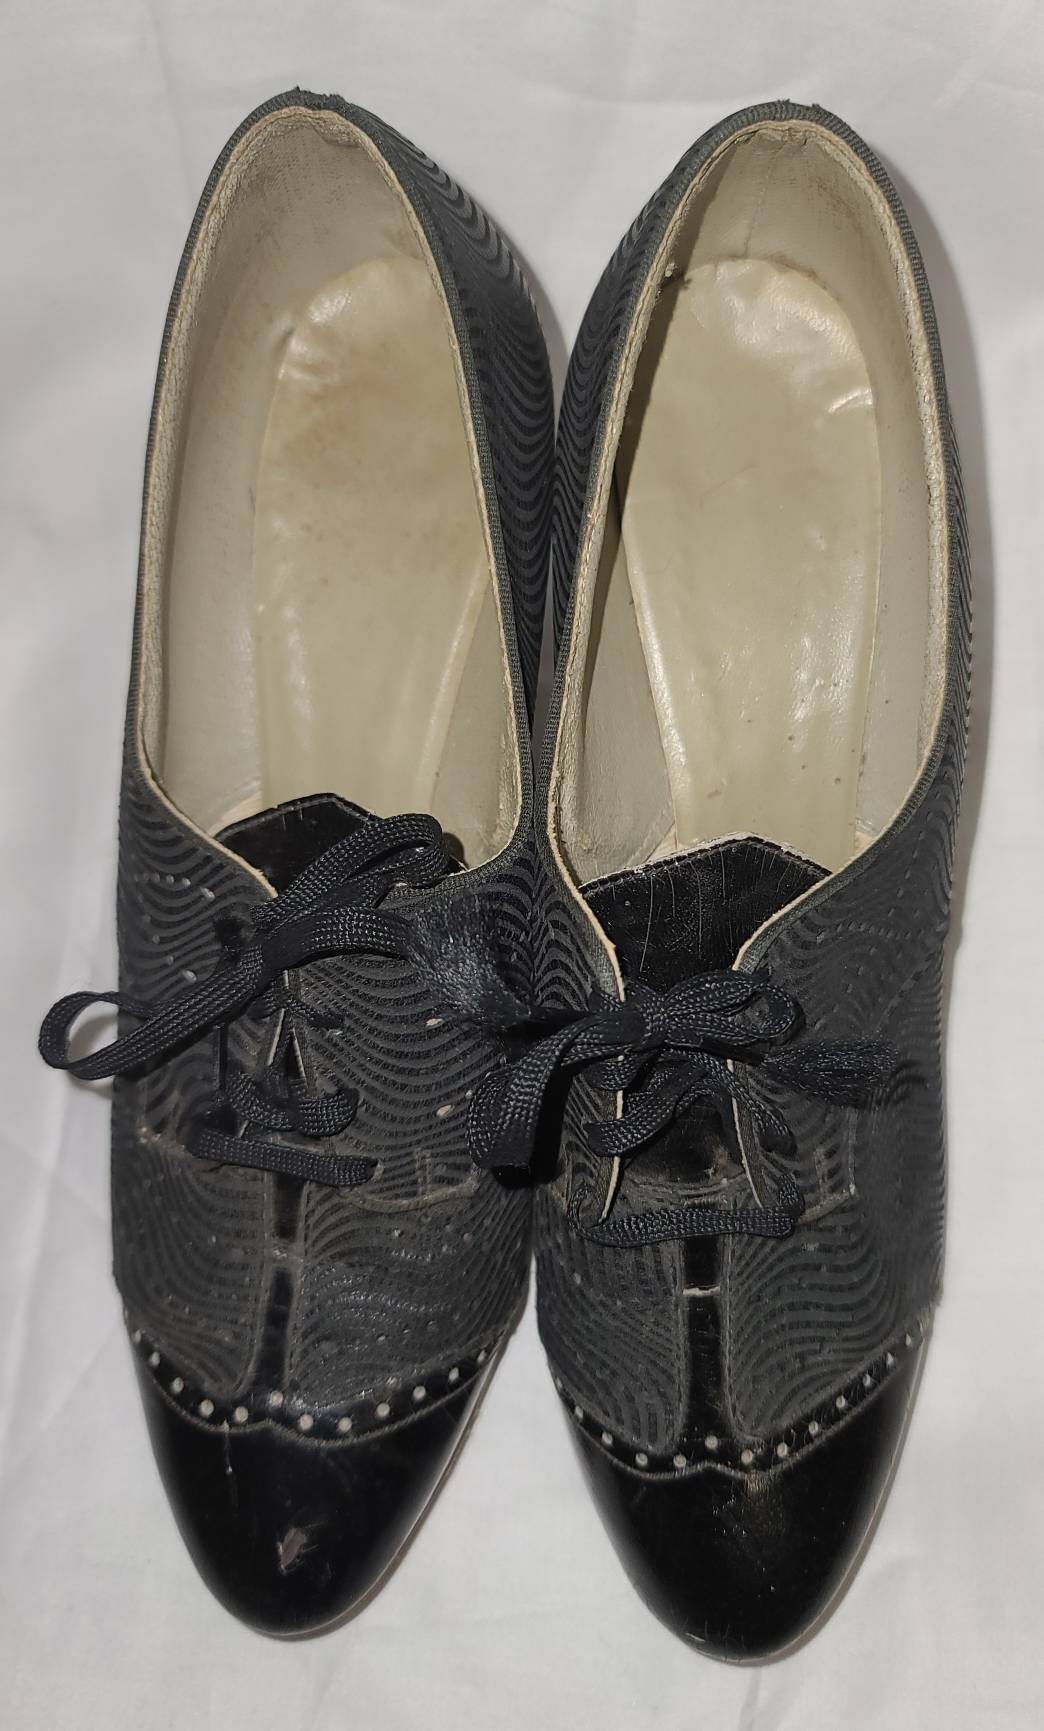 SALE Vintage 1930s Shoes Black Leather Oxford Pumps Heels Spectator Style Unique Details Art Deco Flapper US 4 1/2 very small